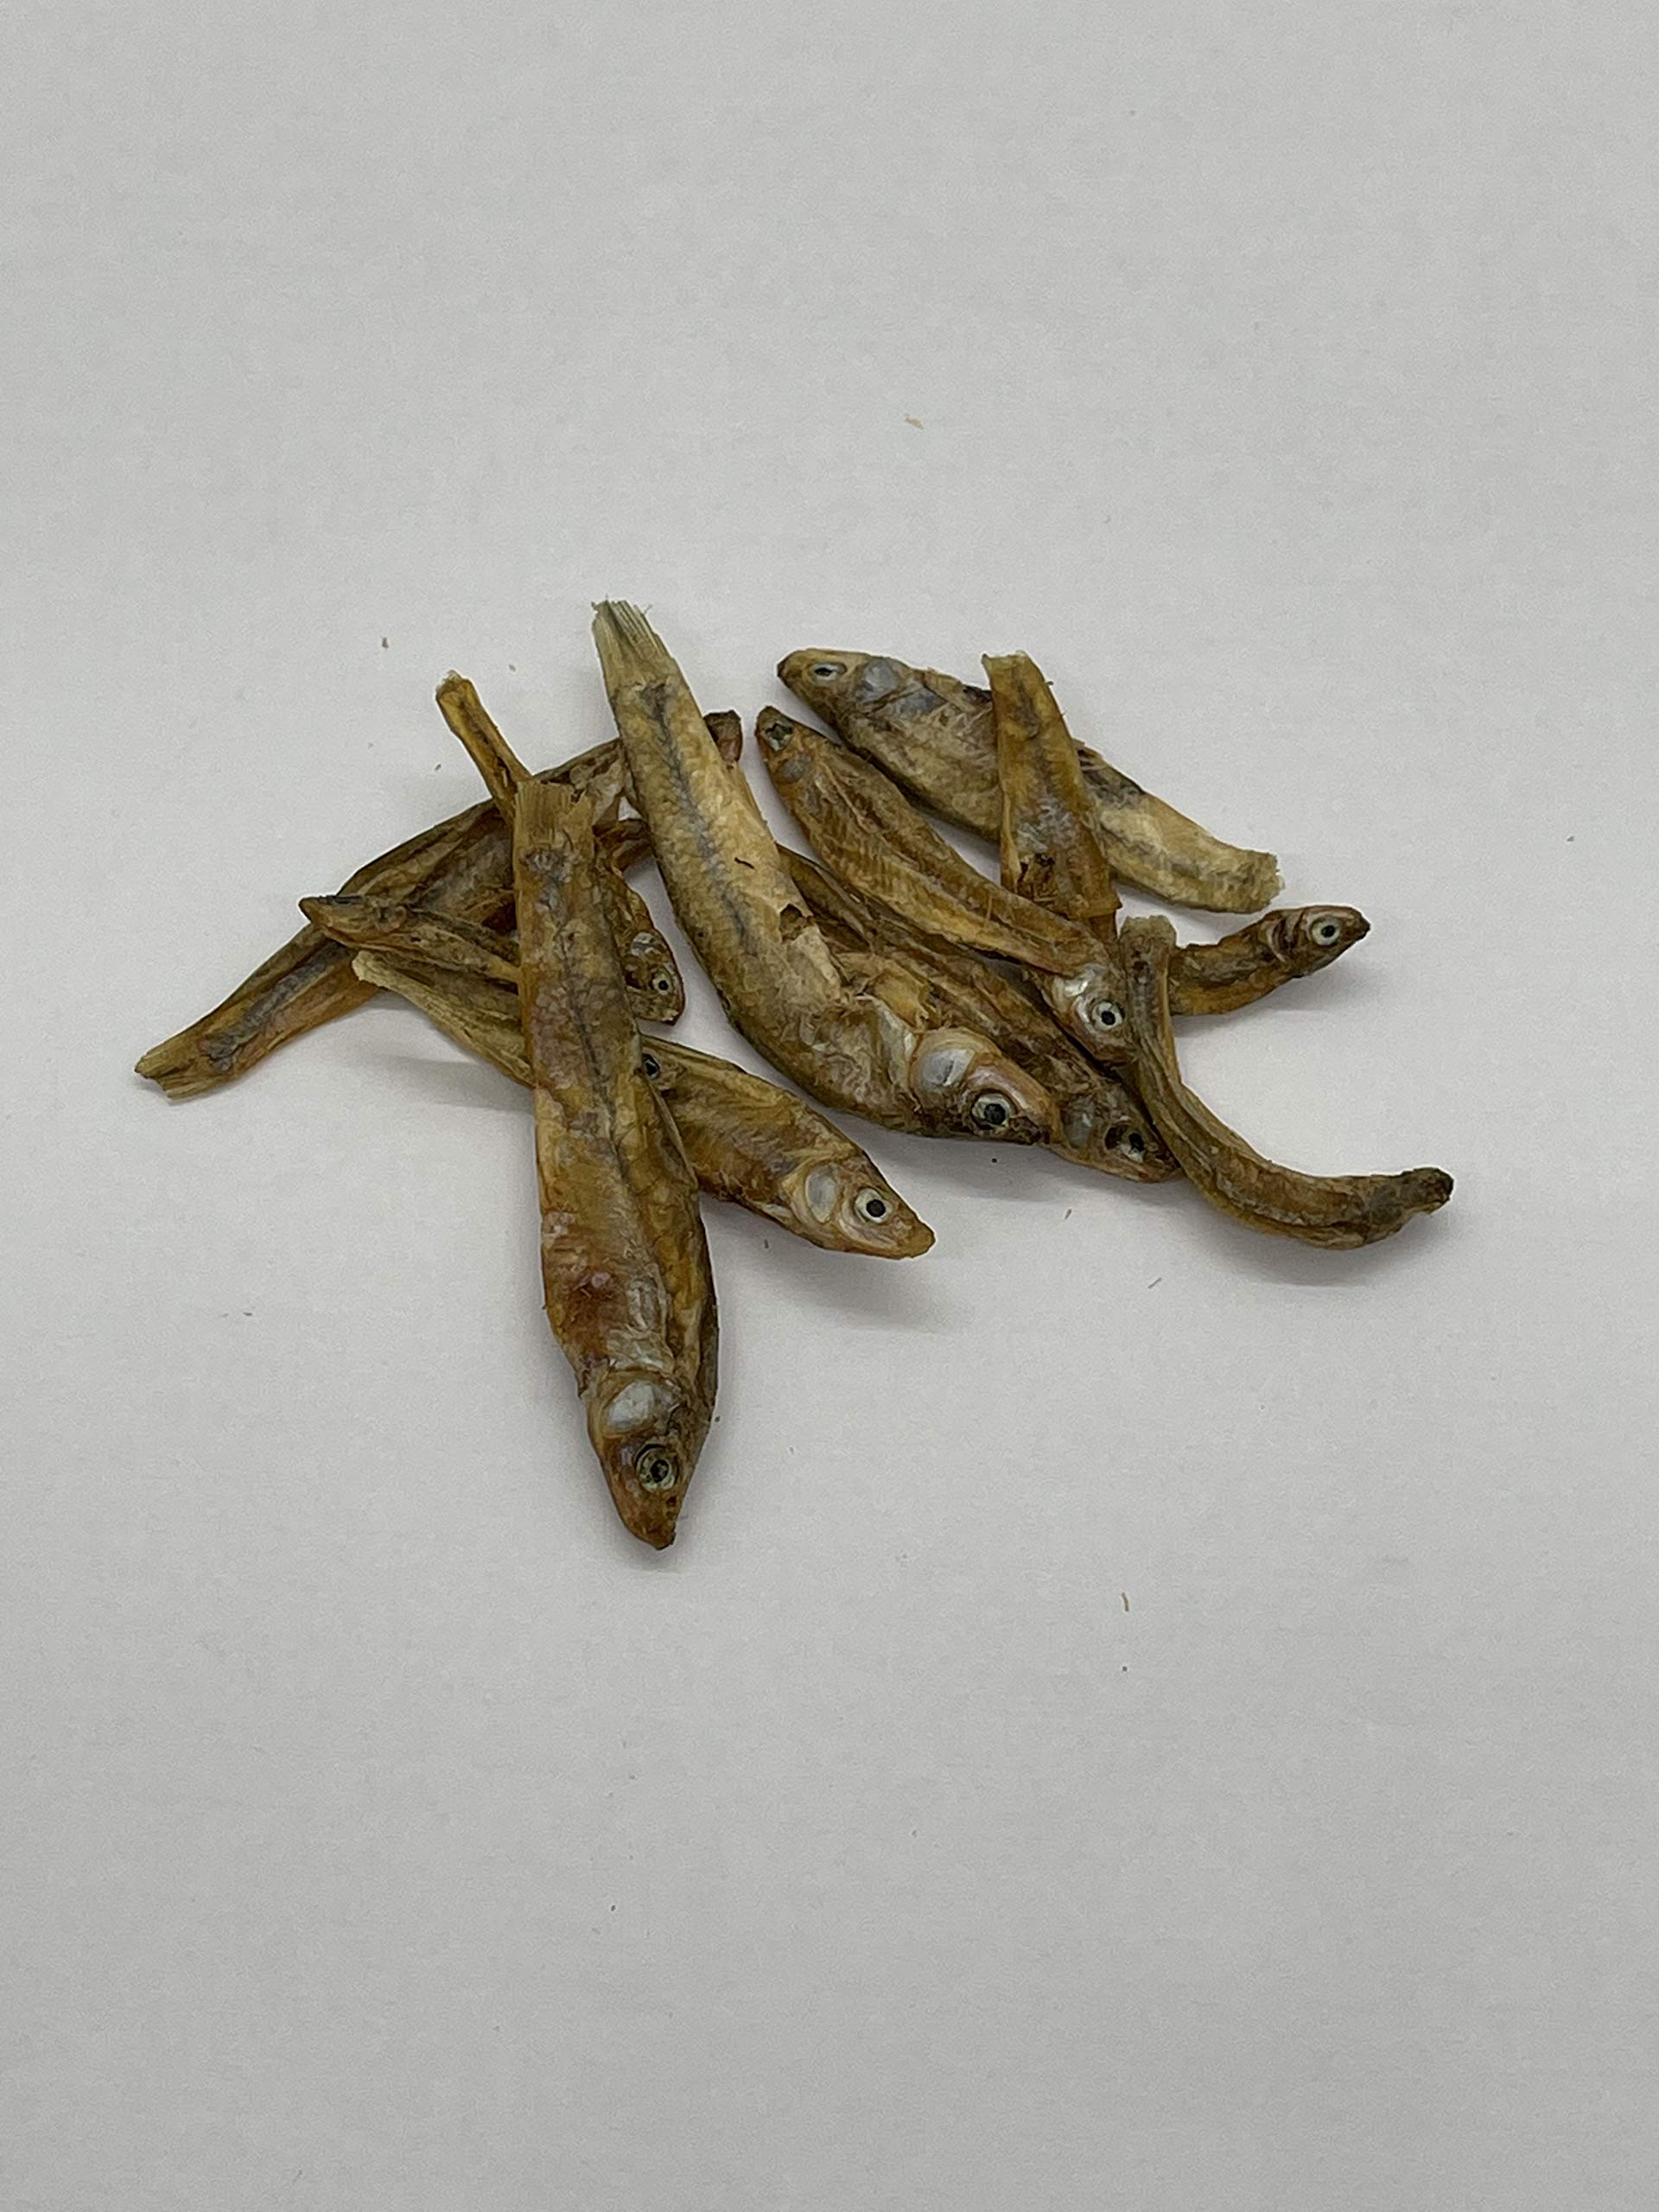 Isopod Depot Chow Freeze Dried Minnows - Premium Isopod Food